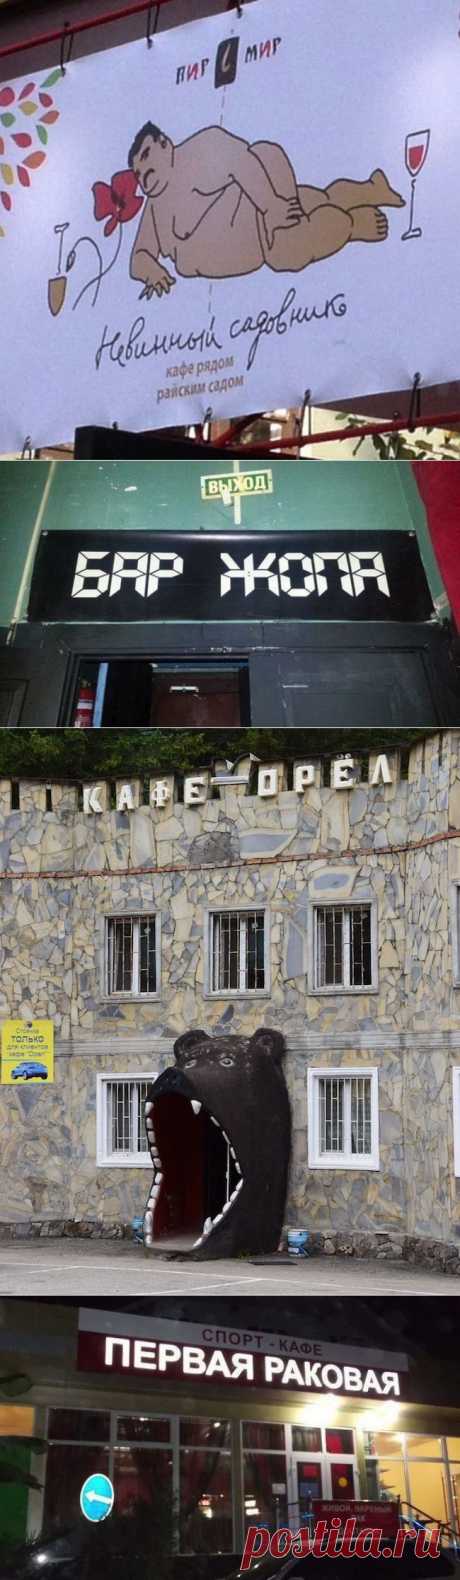 22 кафе, названия которых довели нас до истерики | 4vkusa.ru